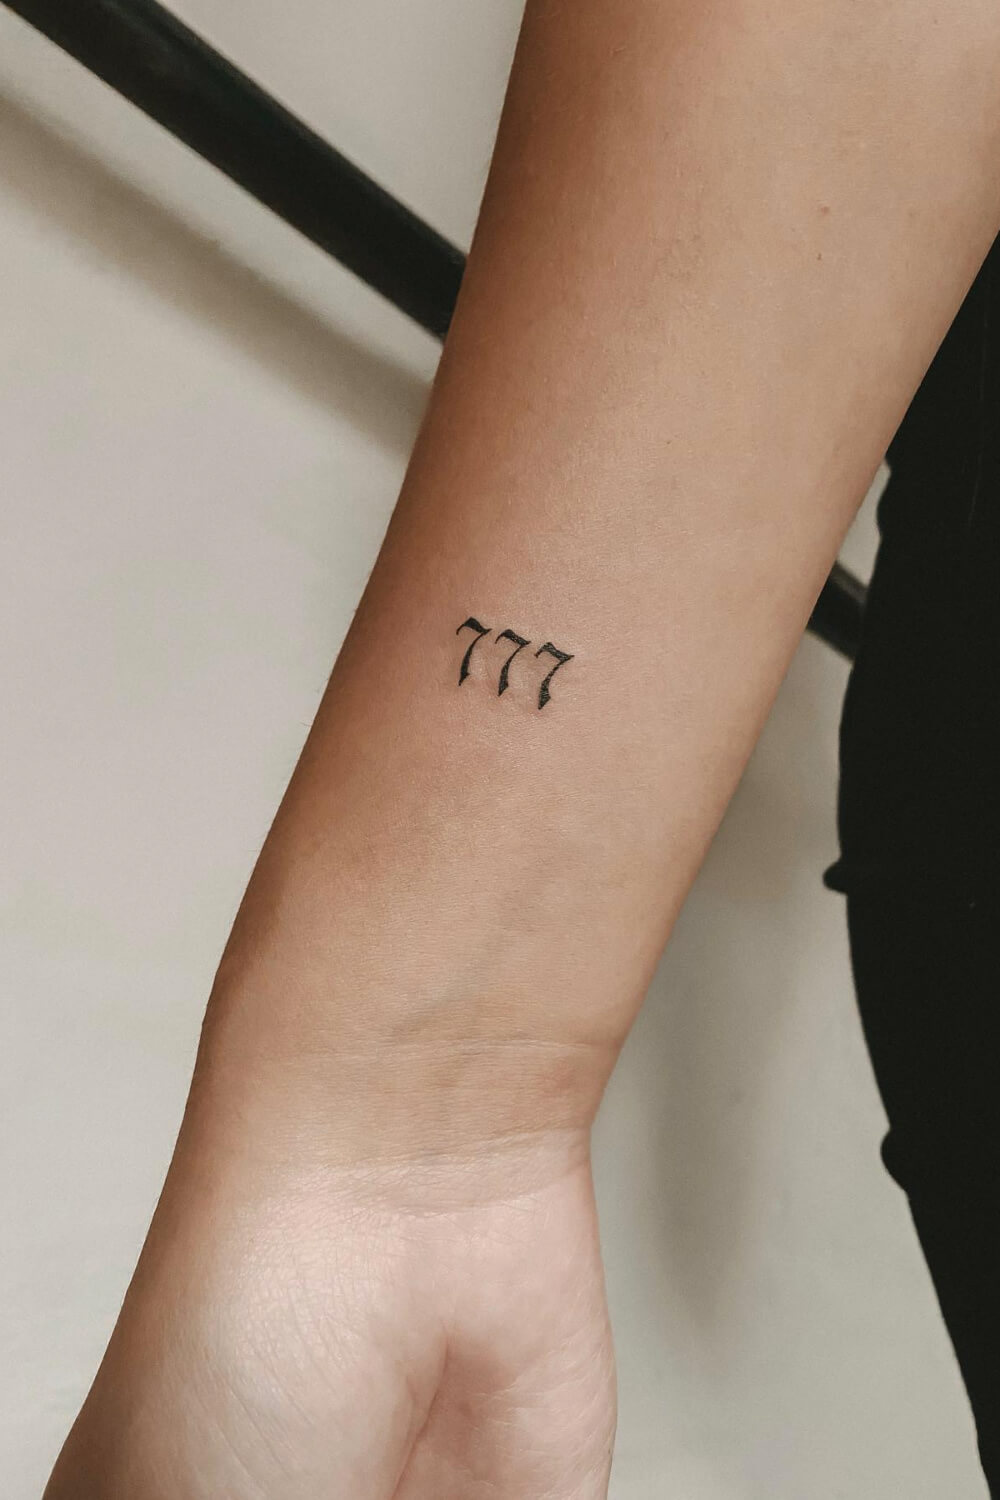 Best 777 Tattoo